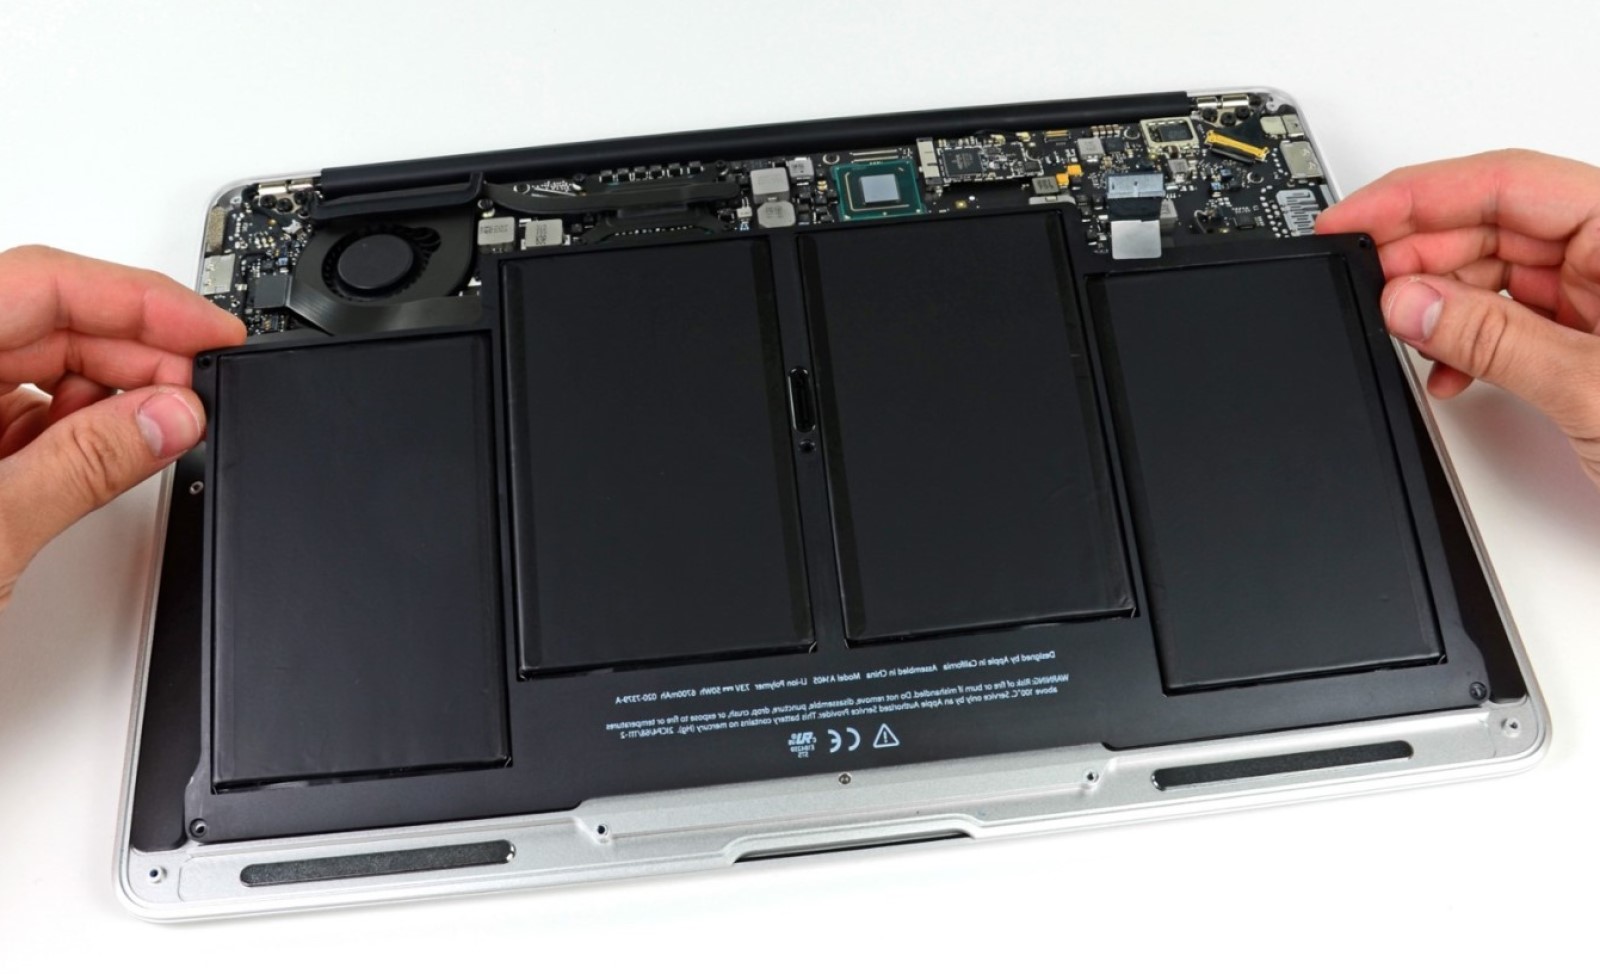 Macbook batteries